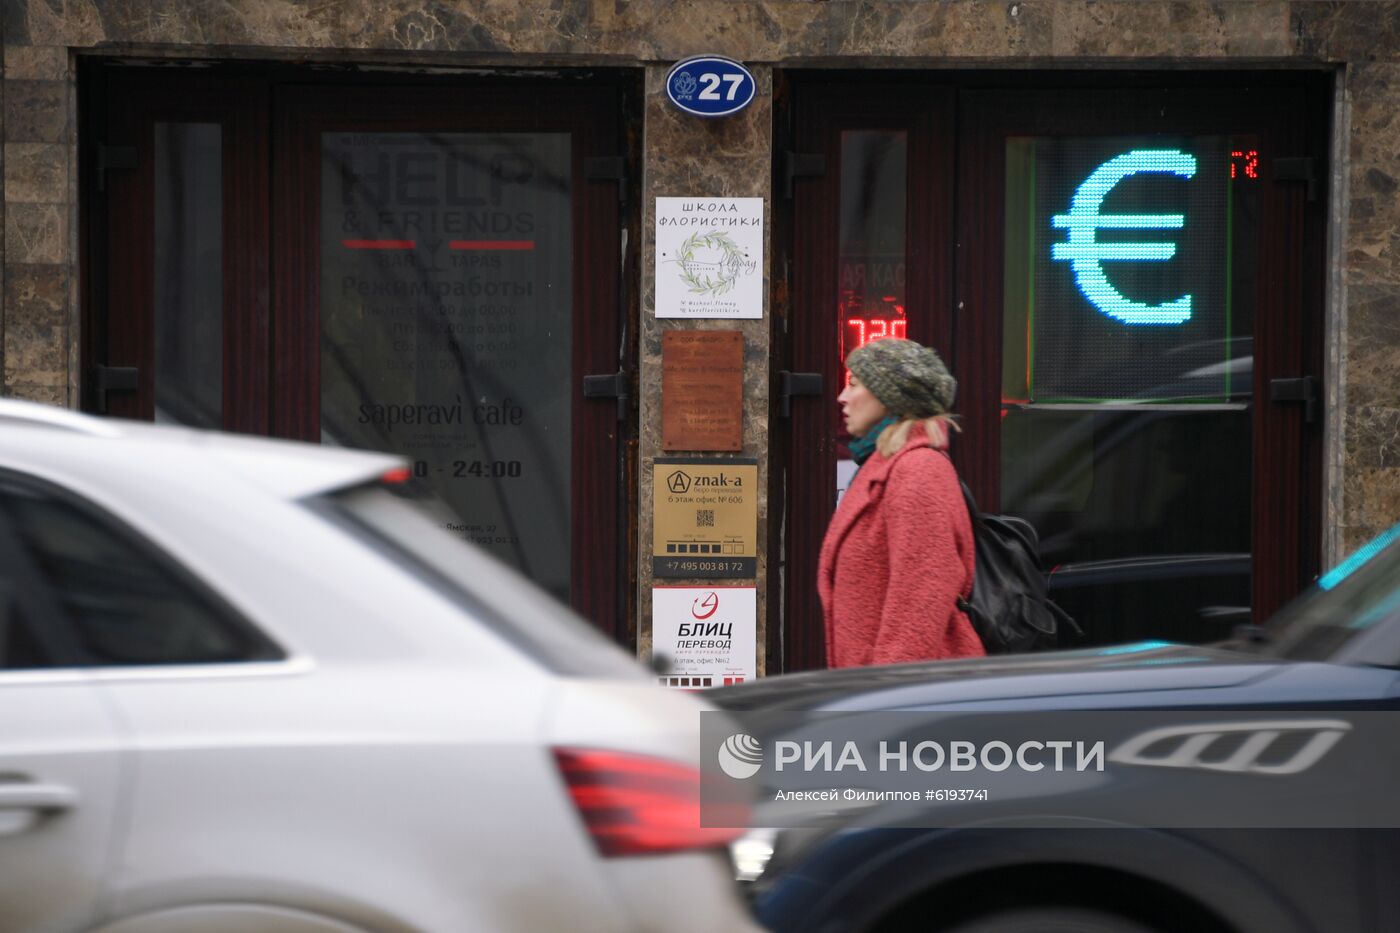 Курс валют в обменных пунктах Москвы 